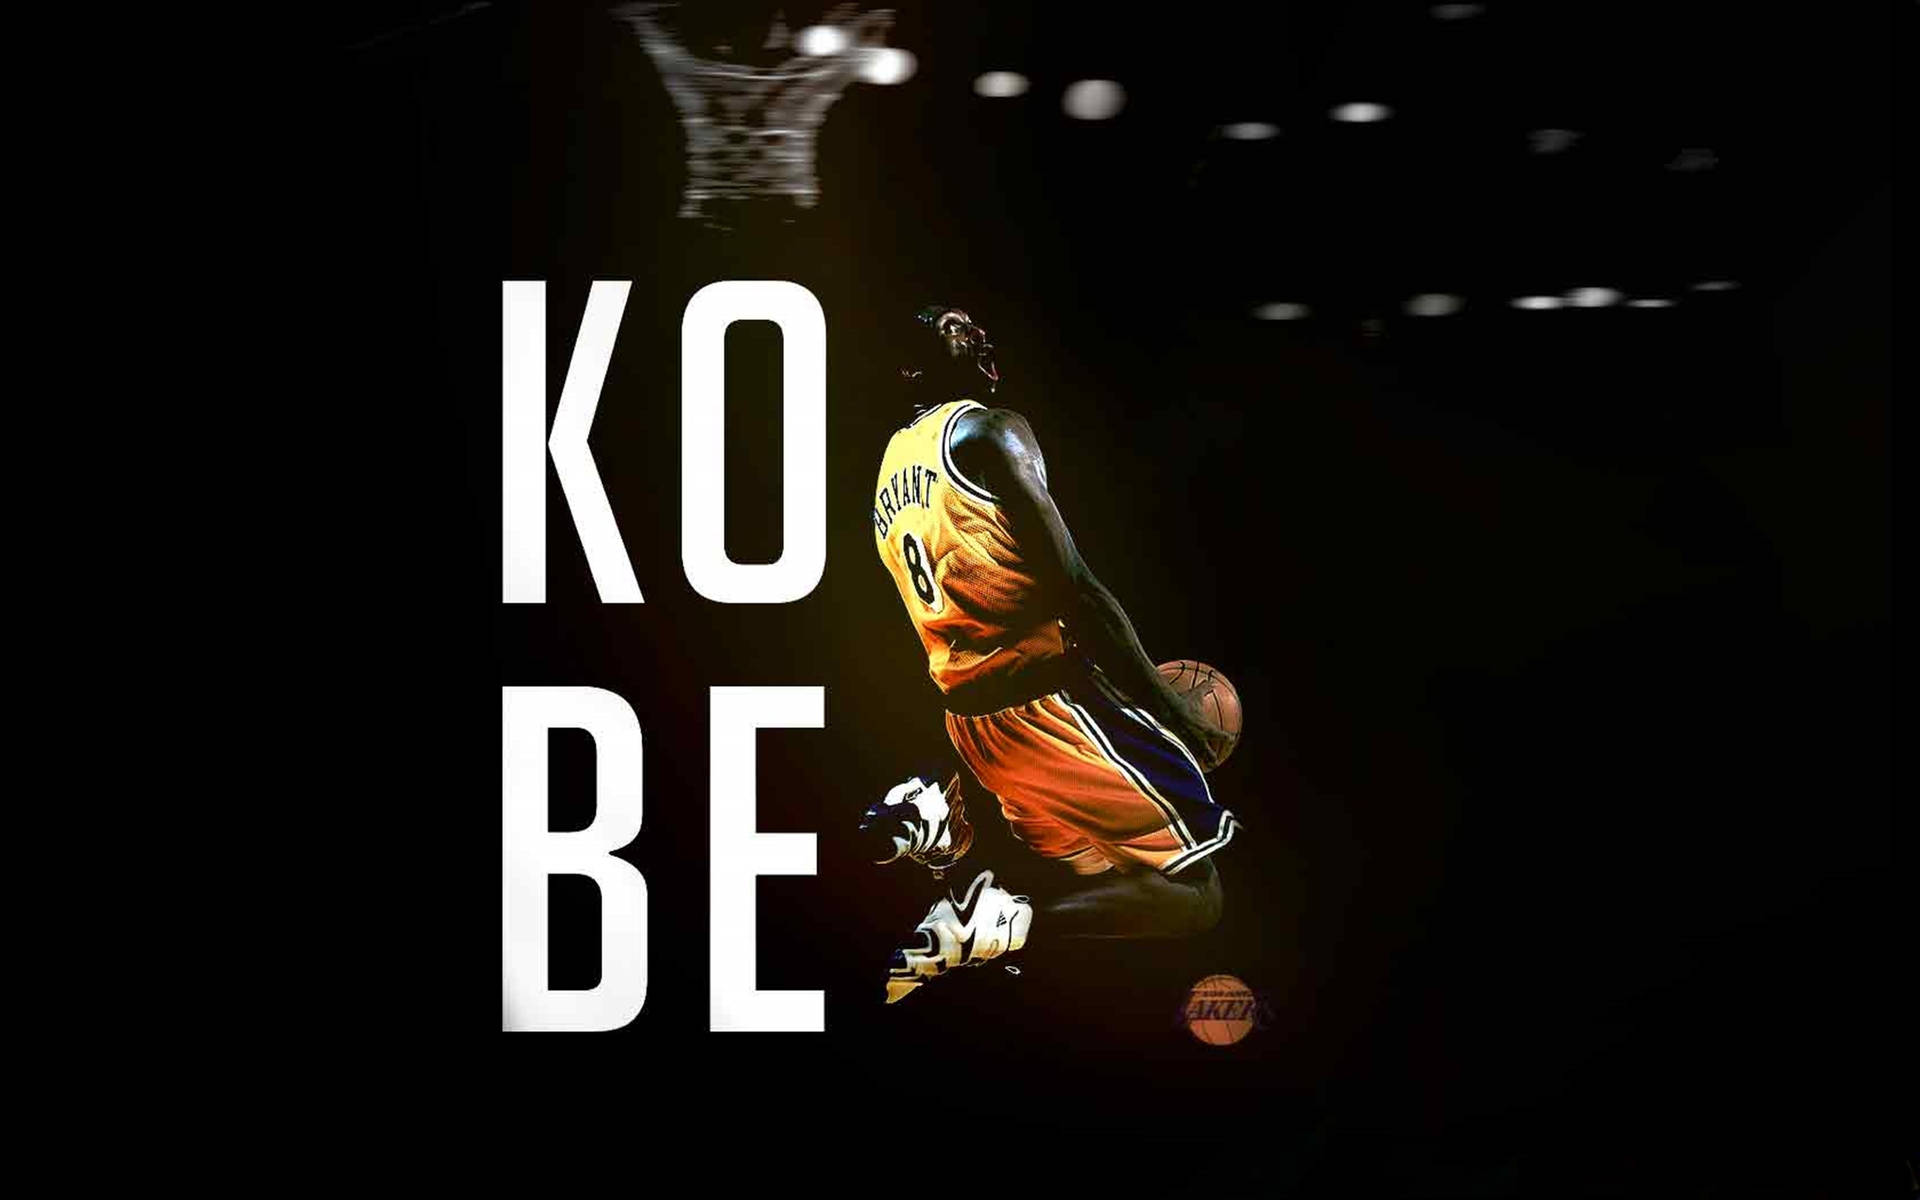 Kobe Bryant Creative Art 4k